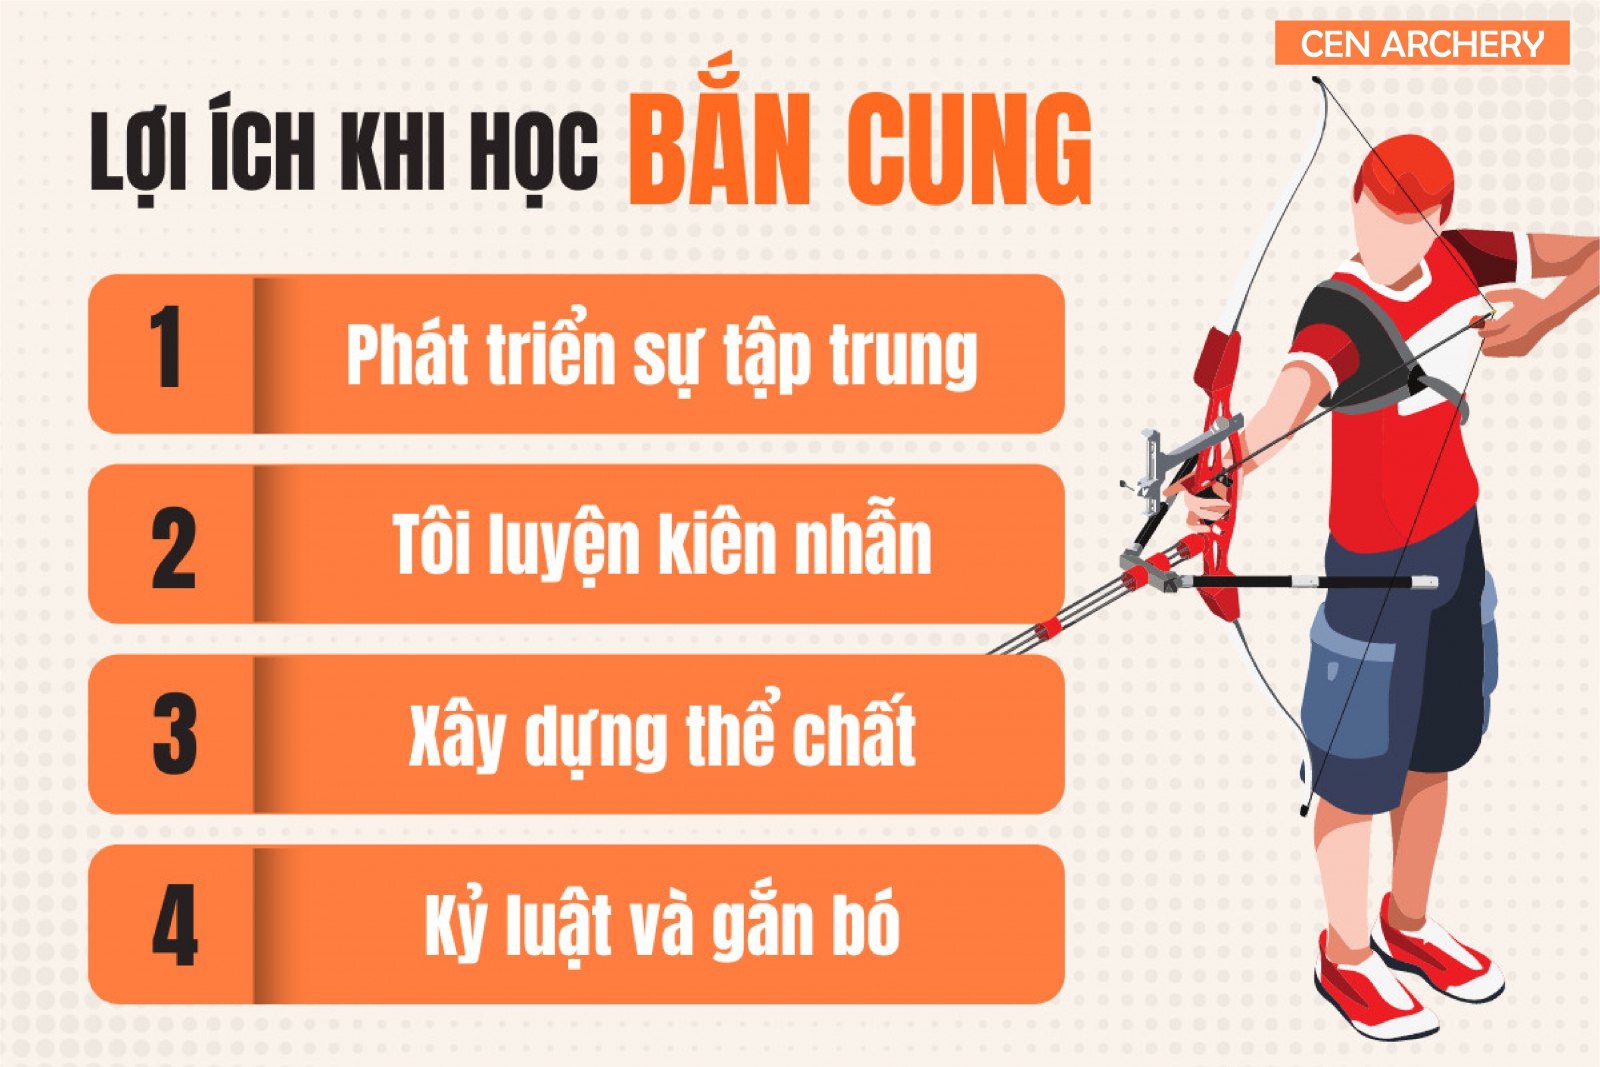 Bắn cung thật ra cũng còn là một bộ môn thể thao mới lạ với người dân Việt Nam. Bằng chứng đó là không có nhiều địa điểm tập luyện cũng như học bắn cung tại...